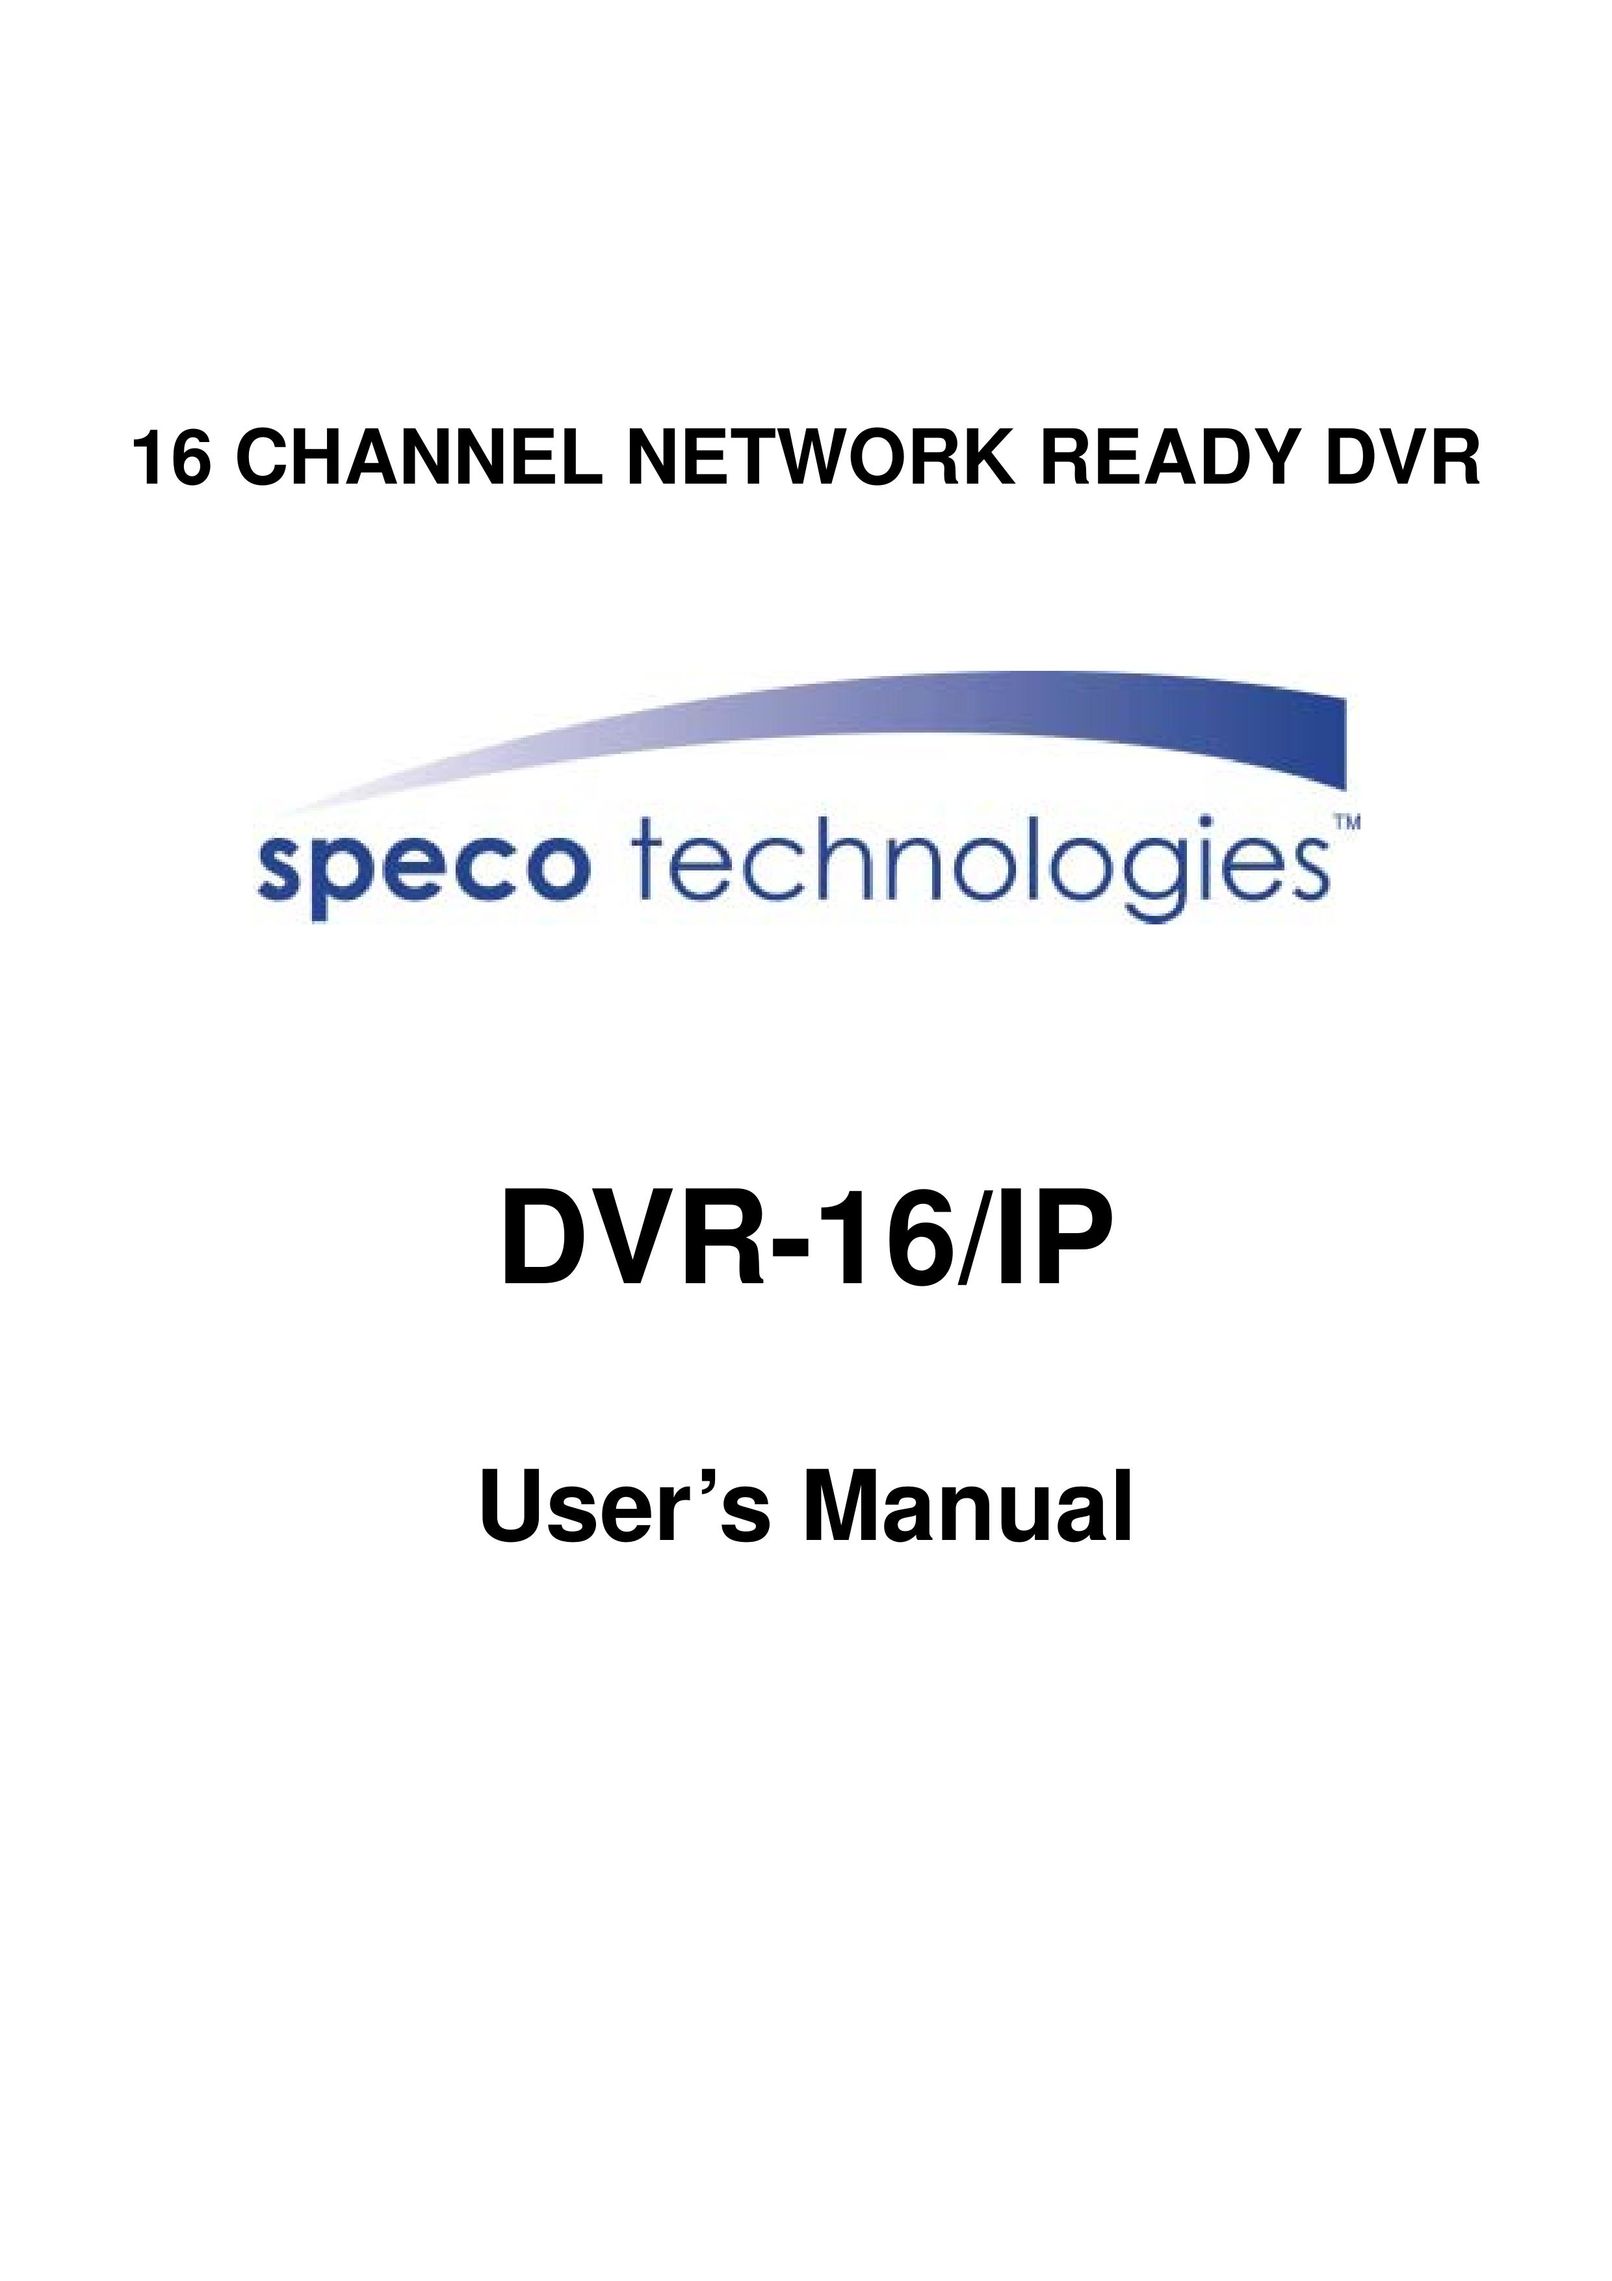 Speco Technologies DVR-16/IP DVR User Manual